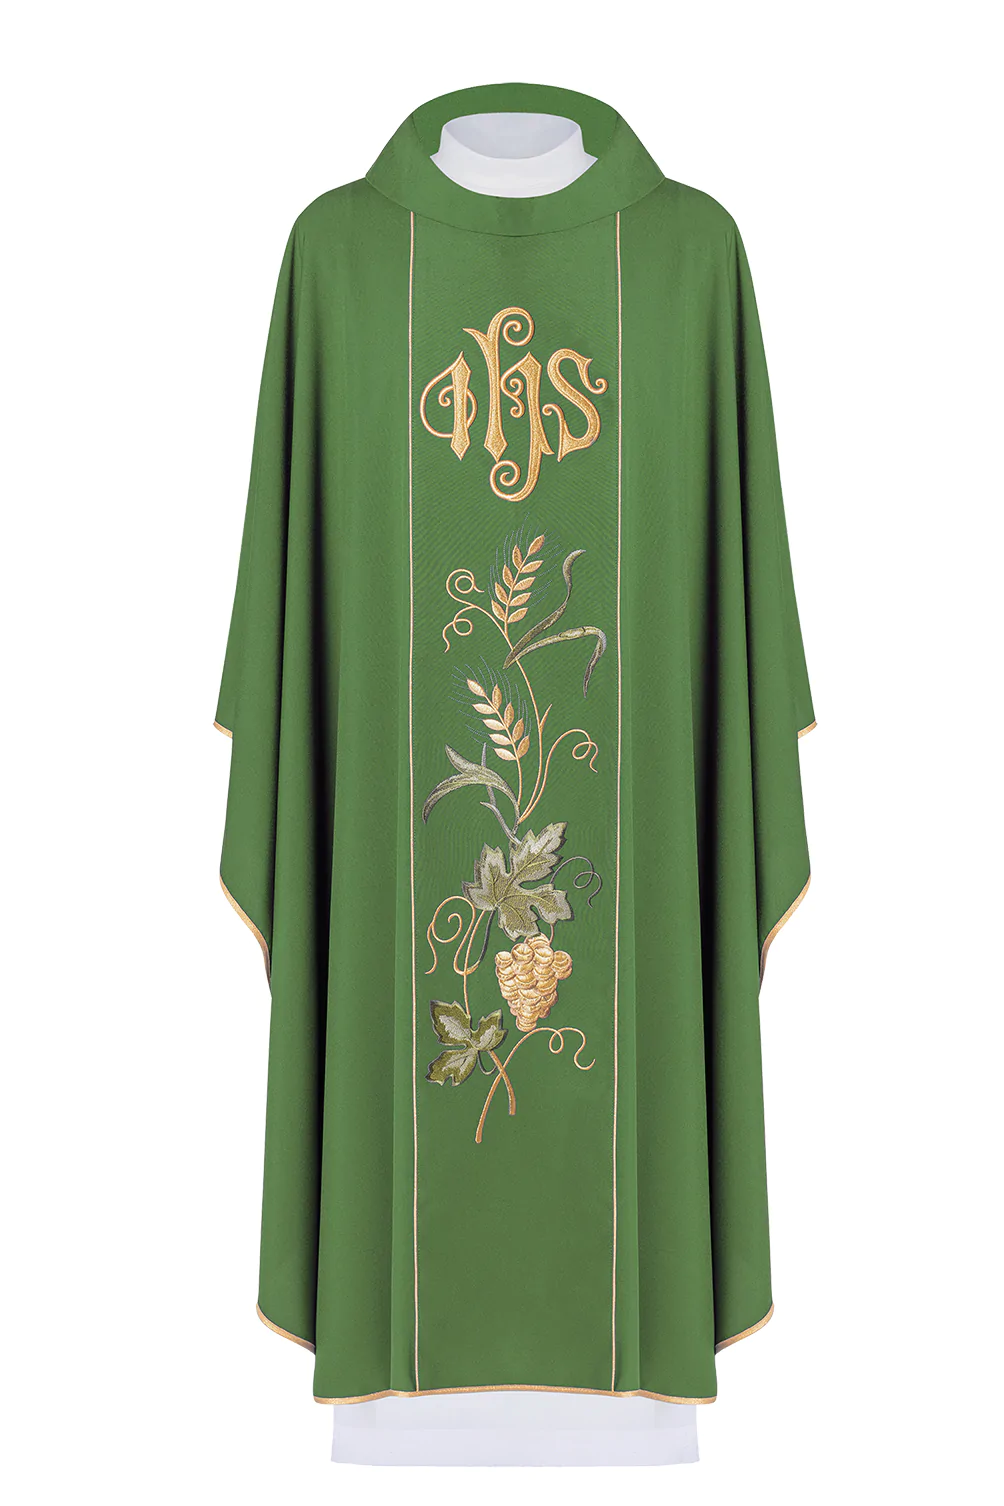 ornat dla księdza w kolorze zielonym z haftowanym pasem, biegnącym pionowo przez środek, zawierającym symbol IHS, złote kłosy oraz winogrono